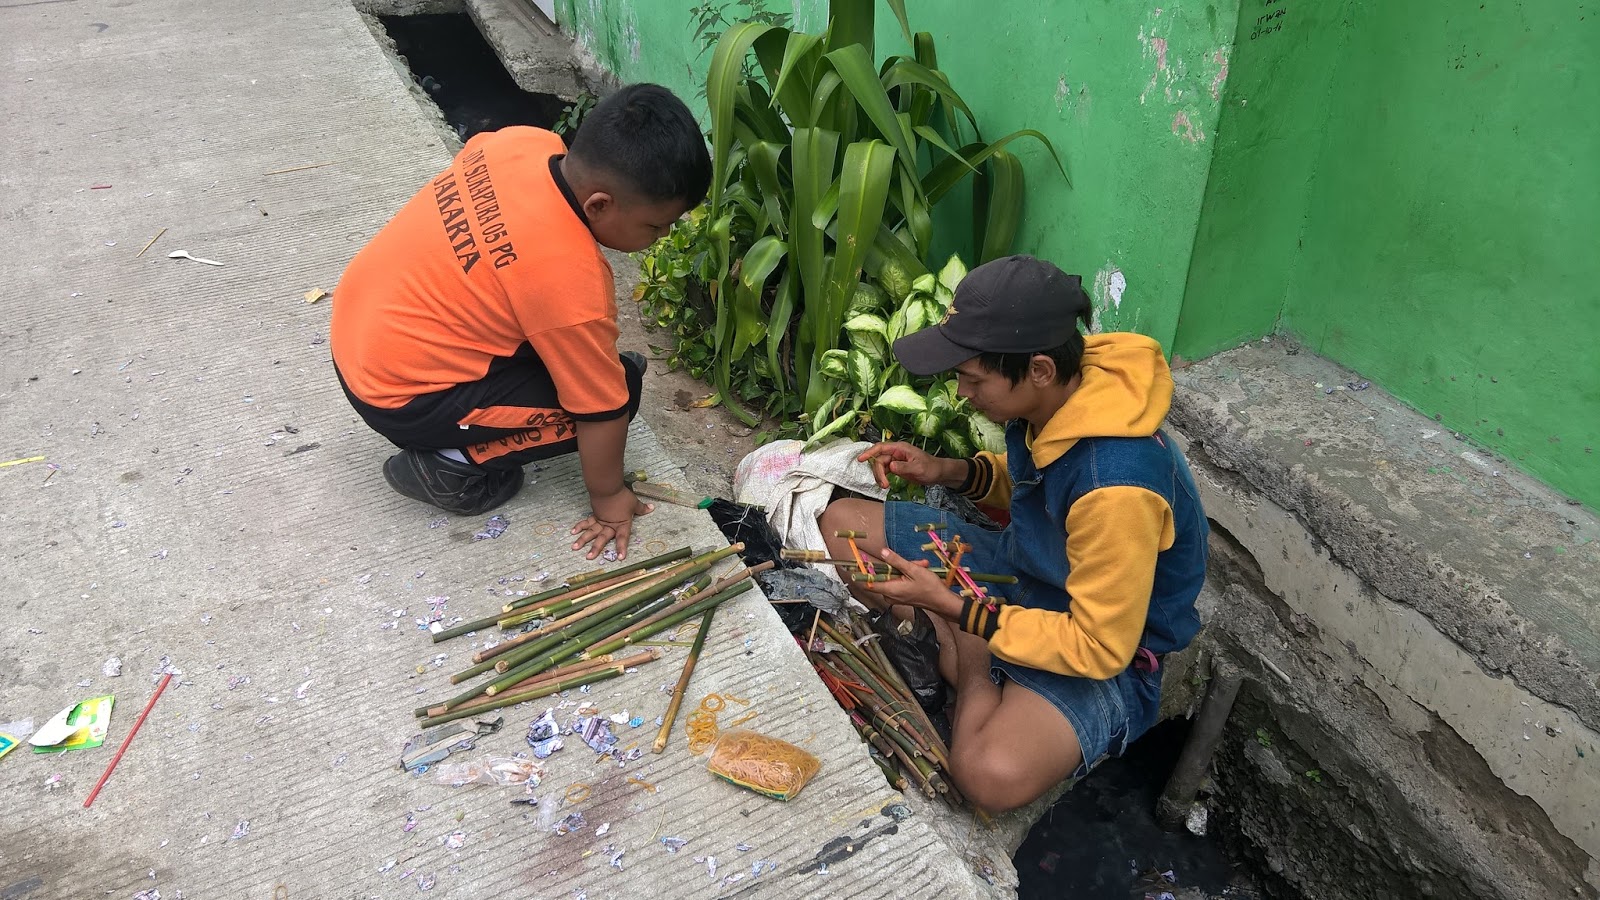 Pistol Mainan Rakitan Bambu Digemari Anak-Anak